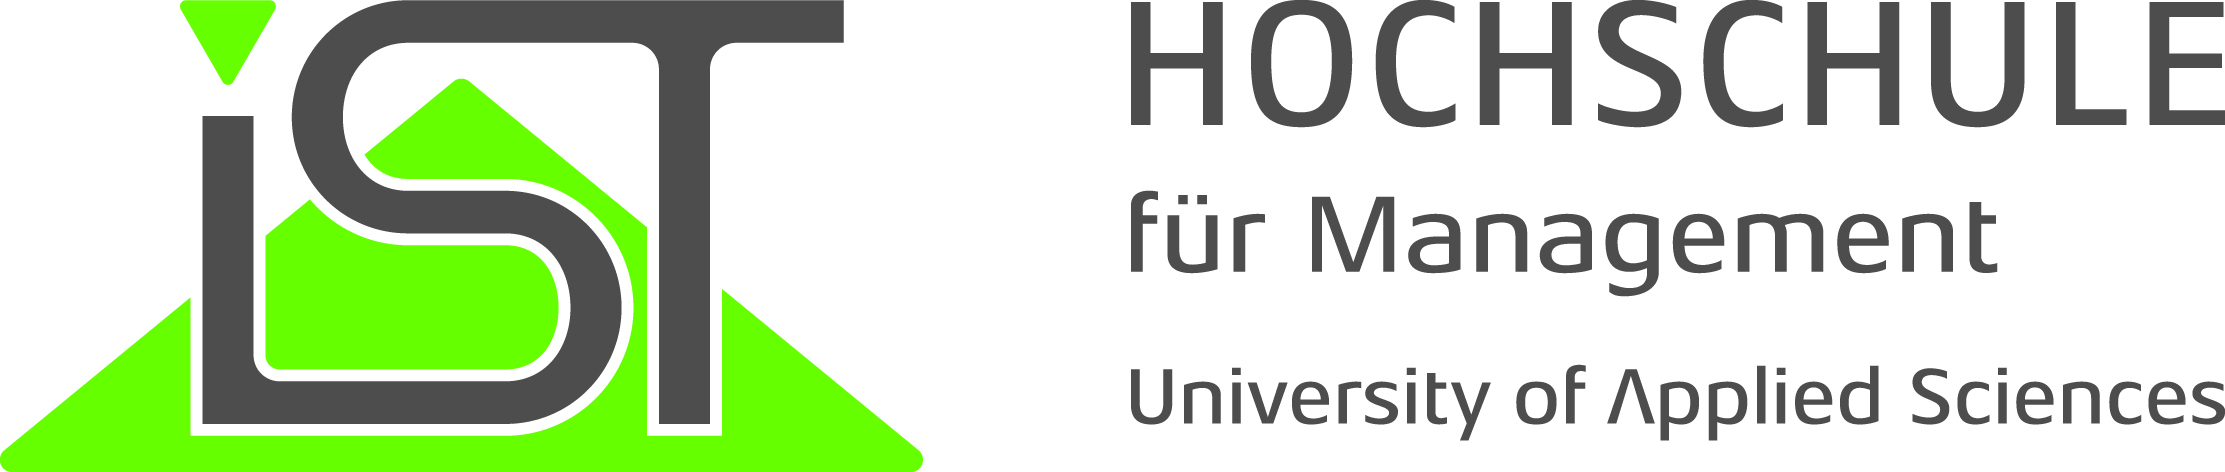 IST-Hochschule für Management GmbH Logo